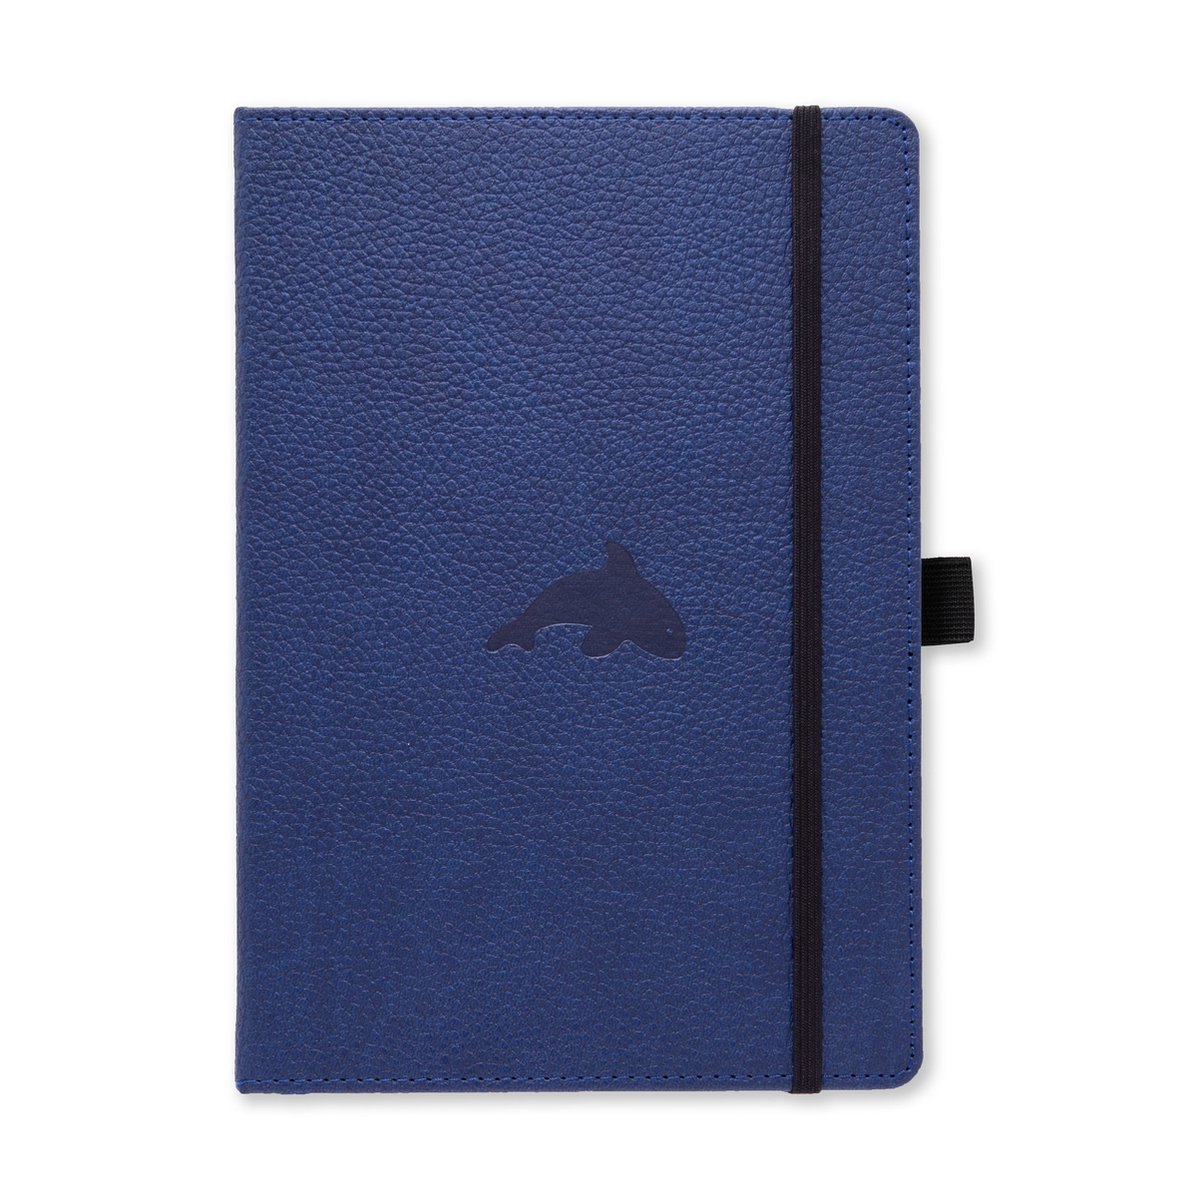 Dingbats* Wildlife A5 Notitieboek – Blue Whale Stippen – Bullet Journal met 100 gsm Inktvrij Papier – Schetsboek met Harde Kaft, Binnenvak, Elastische Sluiting en Bladwijzer